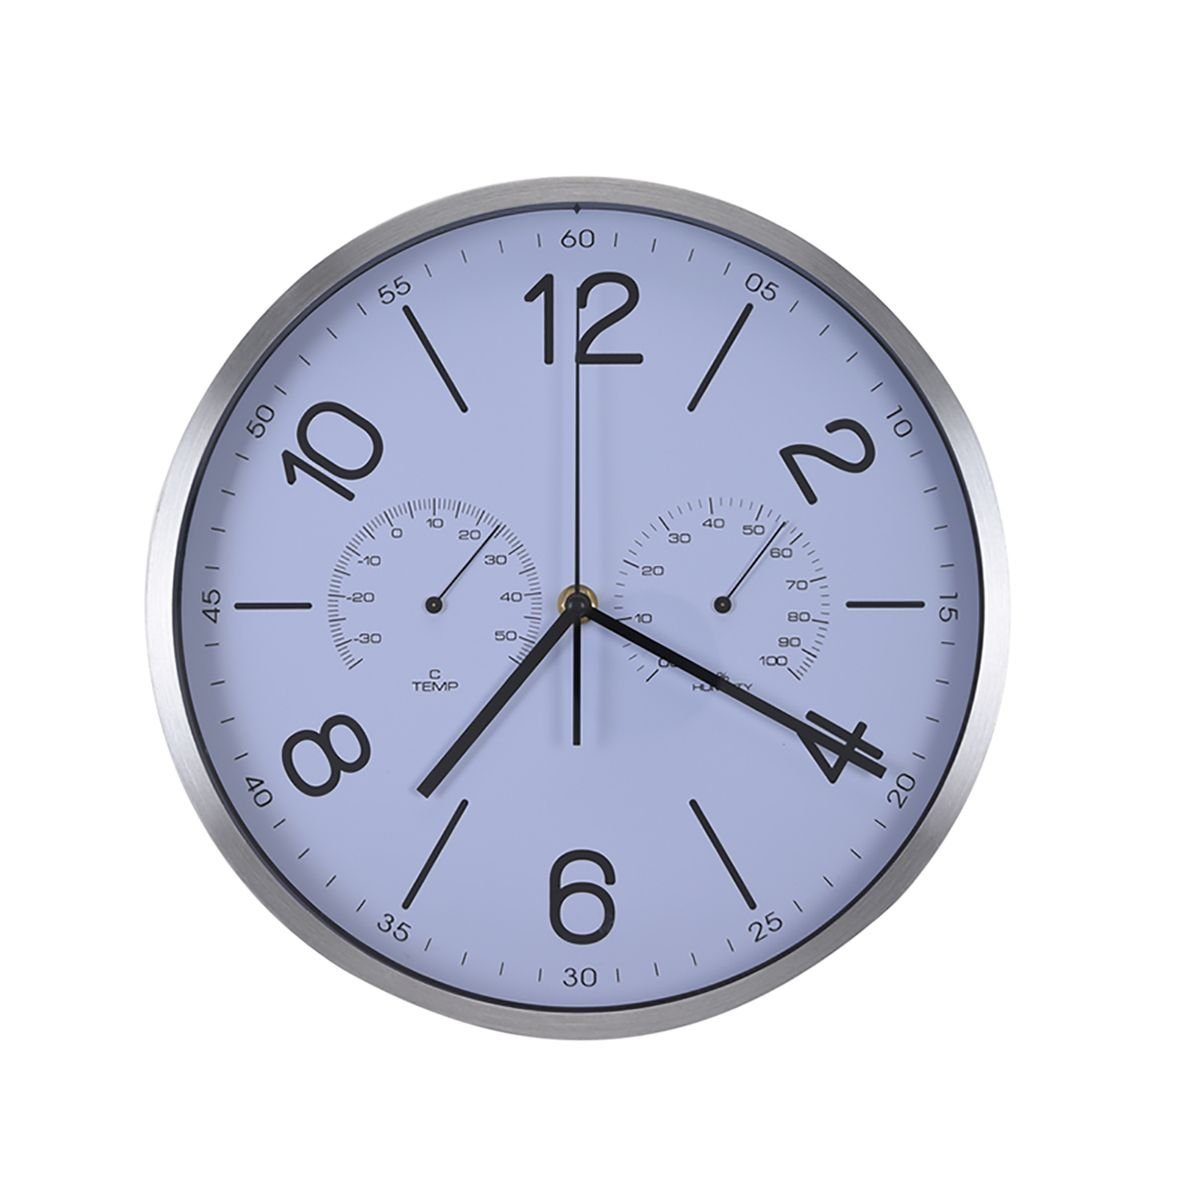 Koopman Uhr Uhr aus Metall in silber / weiß Ø30cm Feuchtigkeit und Temperatur (zum Aufhängen)